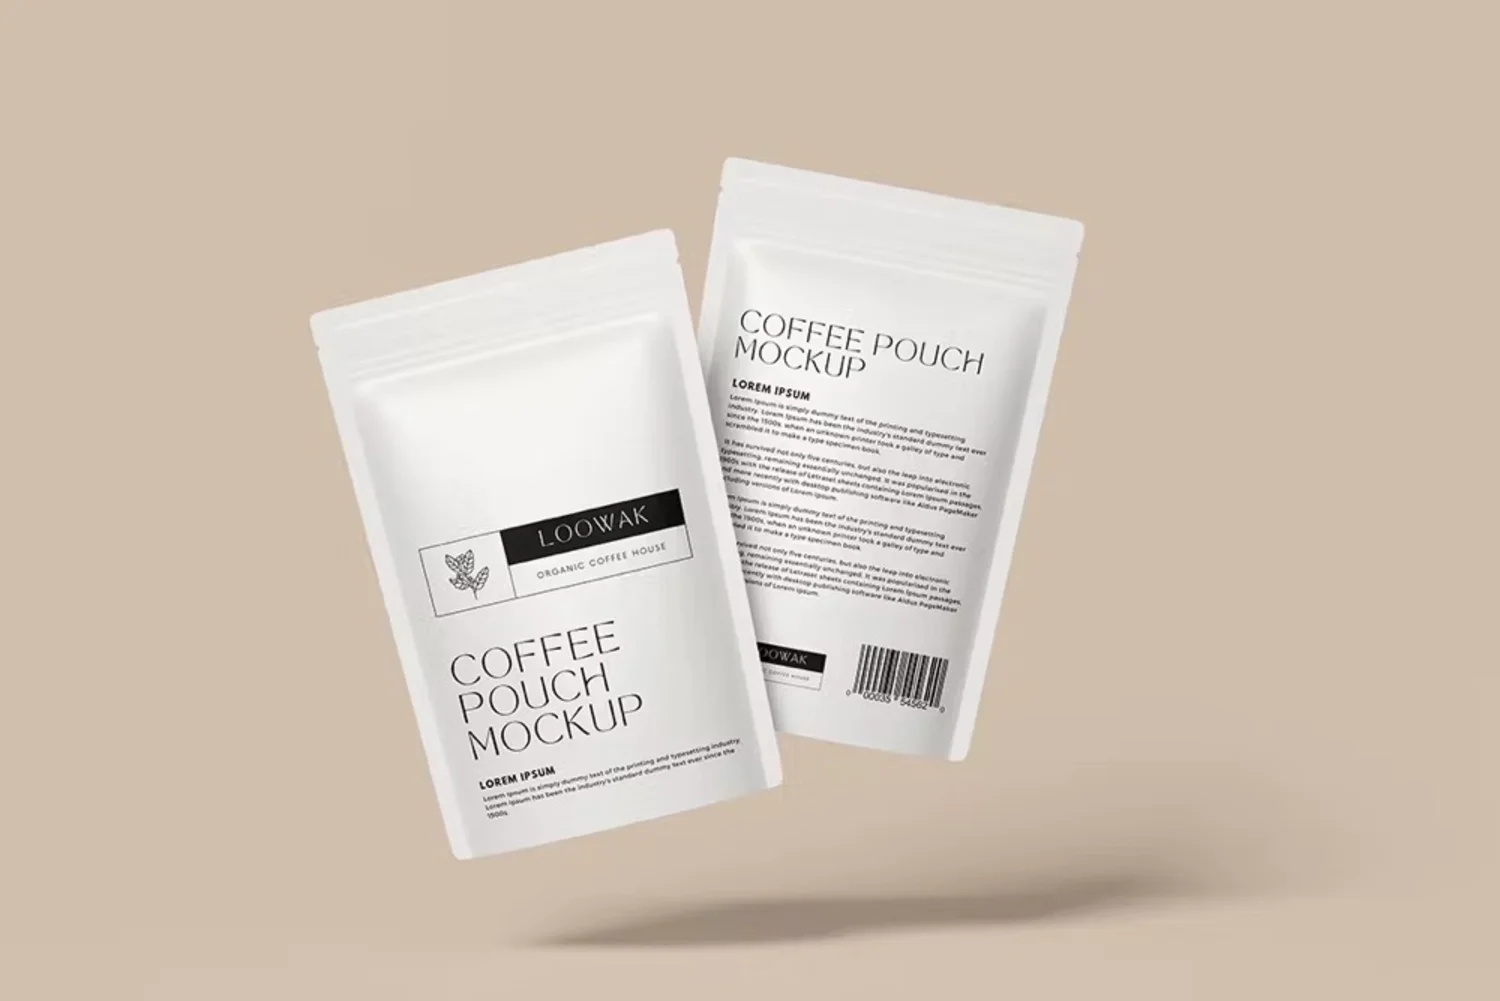 5011 6款自立咖啡袋茶叶袋模型袋身品牌展示设计贴图ps包装样机素材模板 Coffee Pouch Mockup@GOOODME.COM